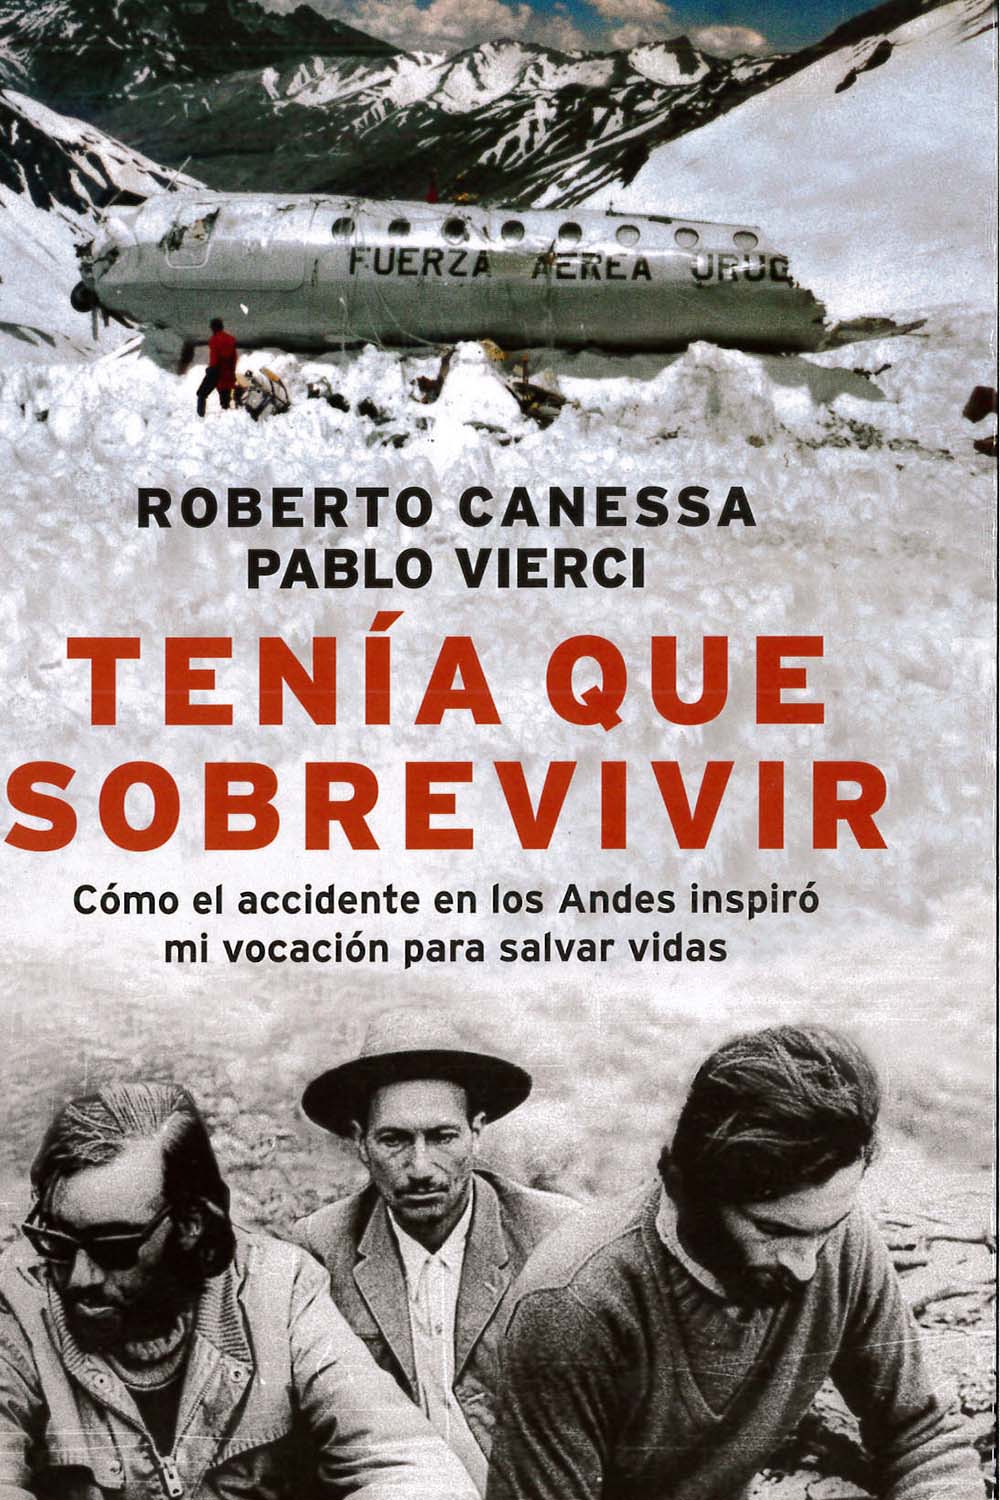 15 / 16 - PQ8098,29 C35 Tenía que sobrevivir
Roberto Canessa - Grupo Editorial Planeta, Argentina 2016